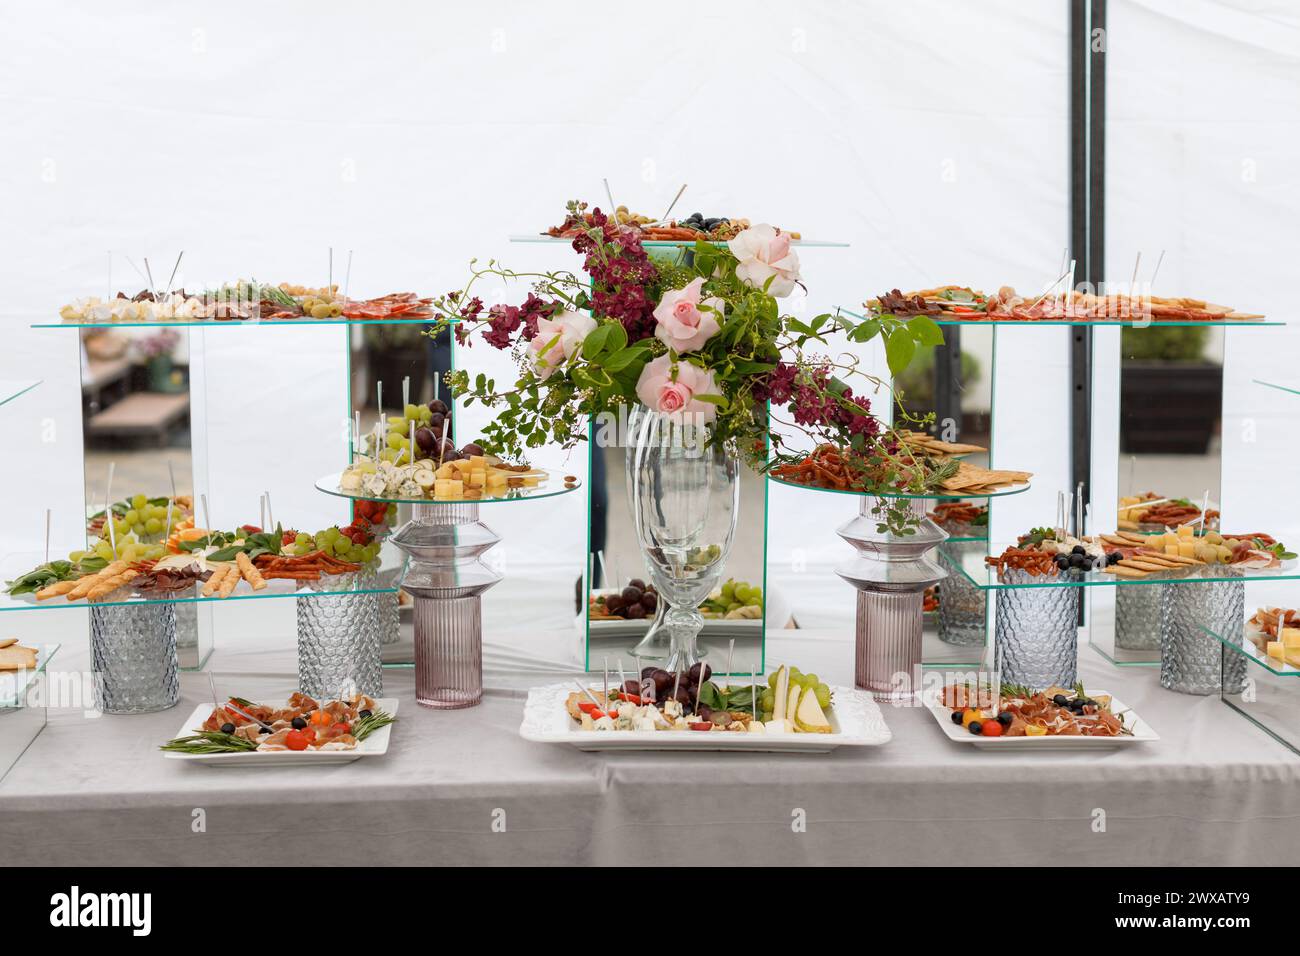 Une table recouverte d'un éventail de différents types de nourriture, allant des fruits et légumes aux viandes et pâtisseries, créant un cadre coloré et appétissant Banque D'Images